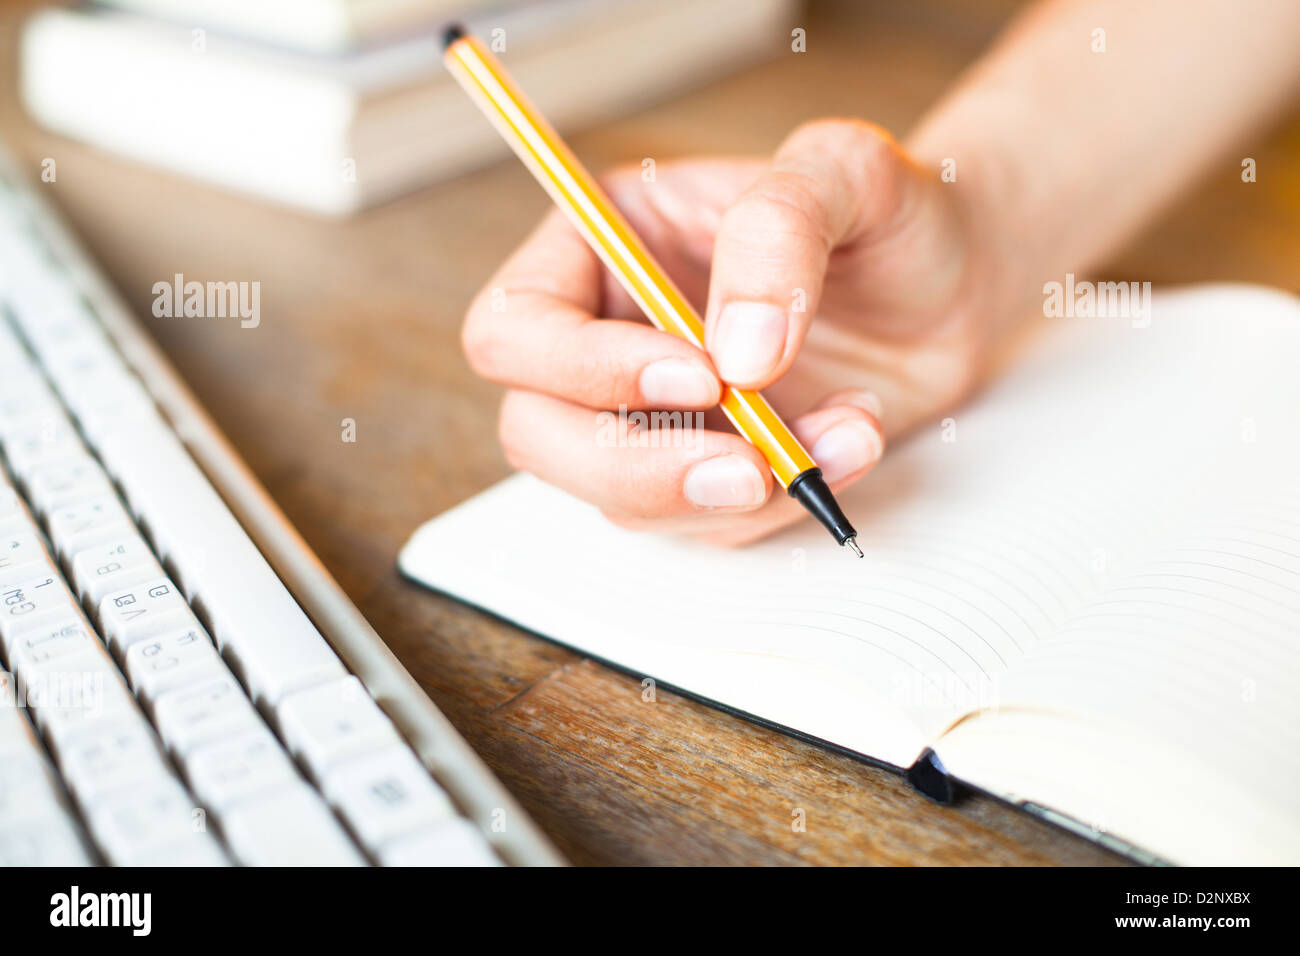 Mains écrit un stylo dans un ordinateur portable, clavier de l'ordinateur et une pile de livres en arrière-plan Banque D'Images